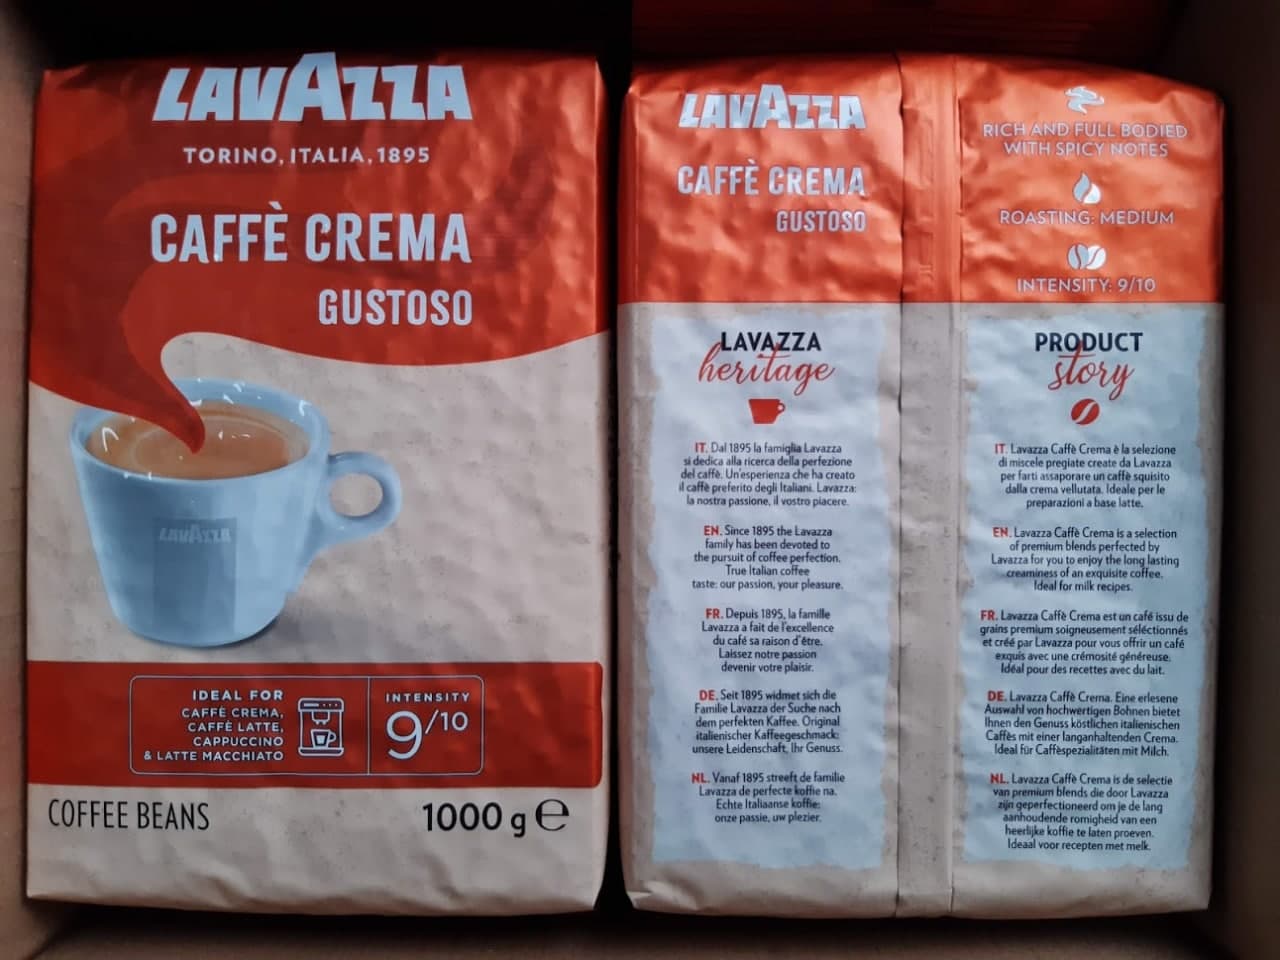 Pupiņu kafija "LAVAZZA" Caffe Crema Gustoso